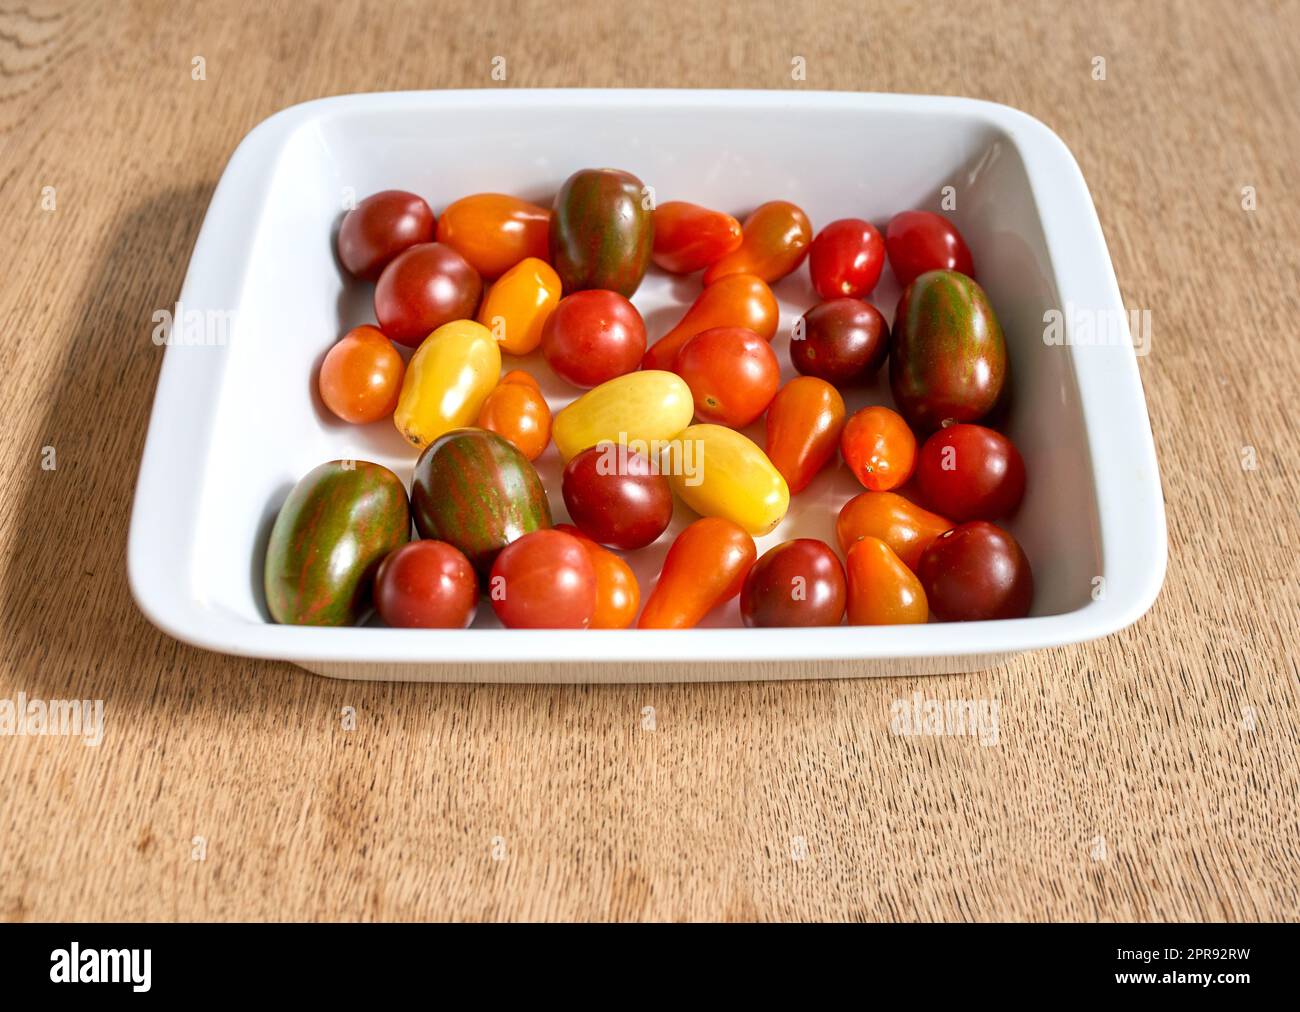 Viele Kirschtomaten in einer Schüssel. Viel buntes Bio-Tomatengemüse für eine gesunde vegetarische Platte. Buntes kleines köstliches Obst, perfekt für vegane vegetarische Speisen, Vorspeisen oder Snacks Stockfoto